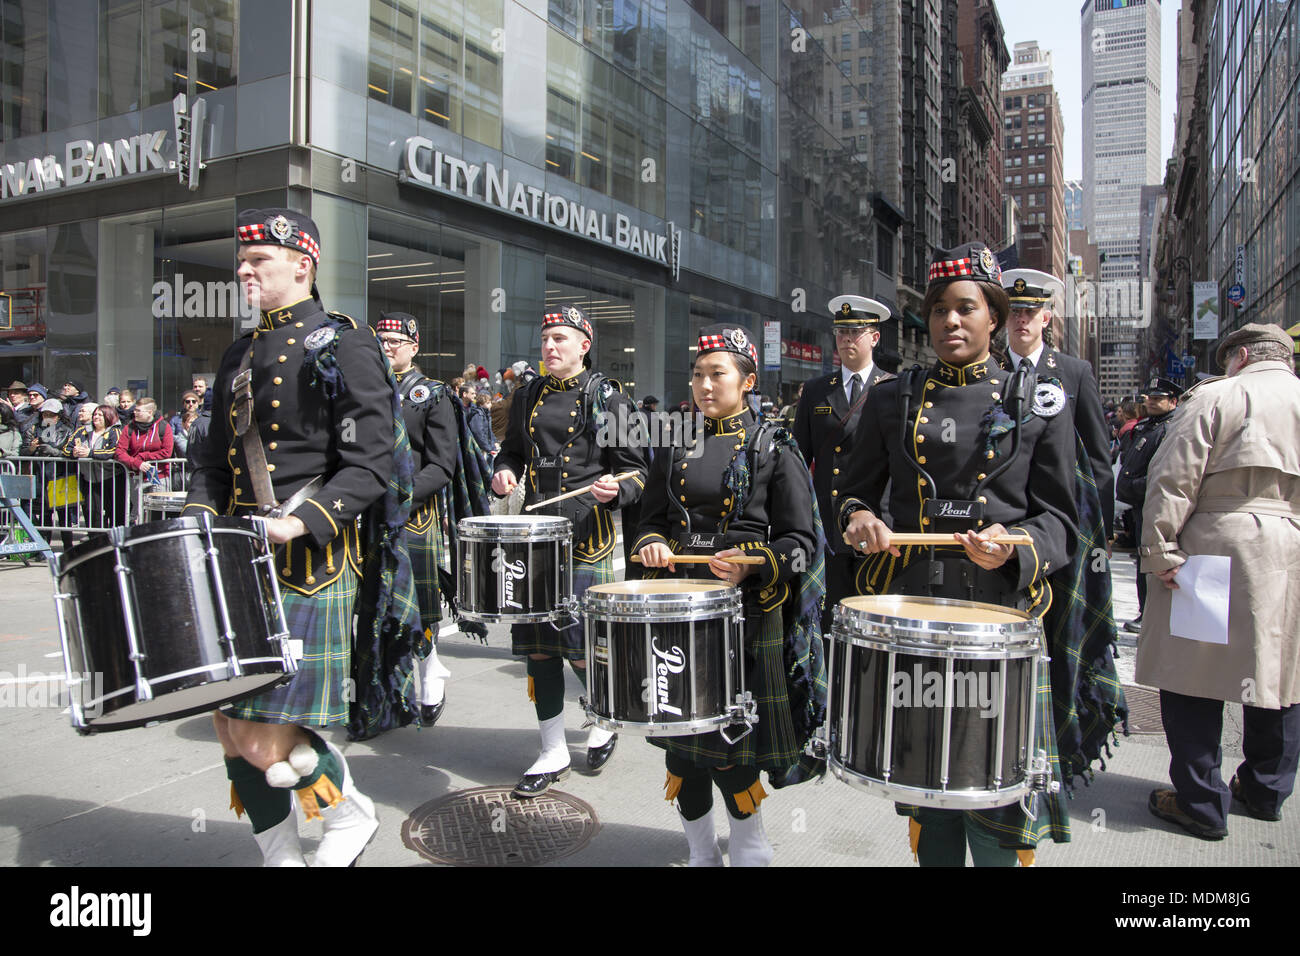 United States Naval Academy Pipes and Drums Band mars dans la parade du tartan. Le défilé annuel des marches au nord sur le tartan de la 6e Avenue à Manhattan. Banque D'Images